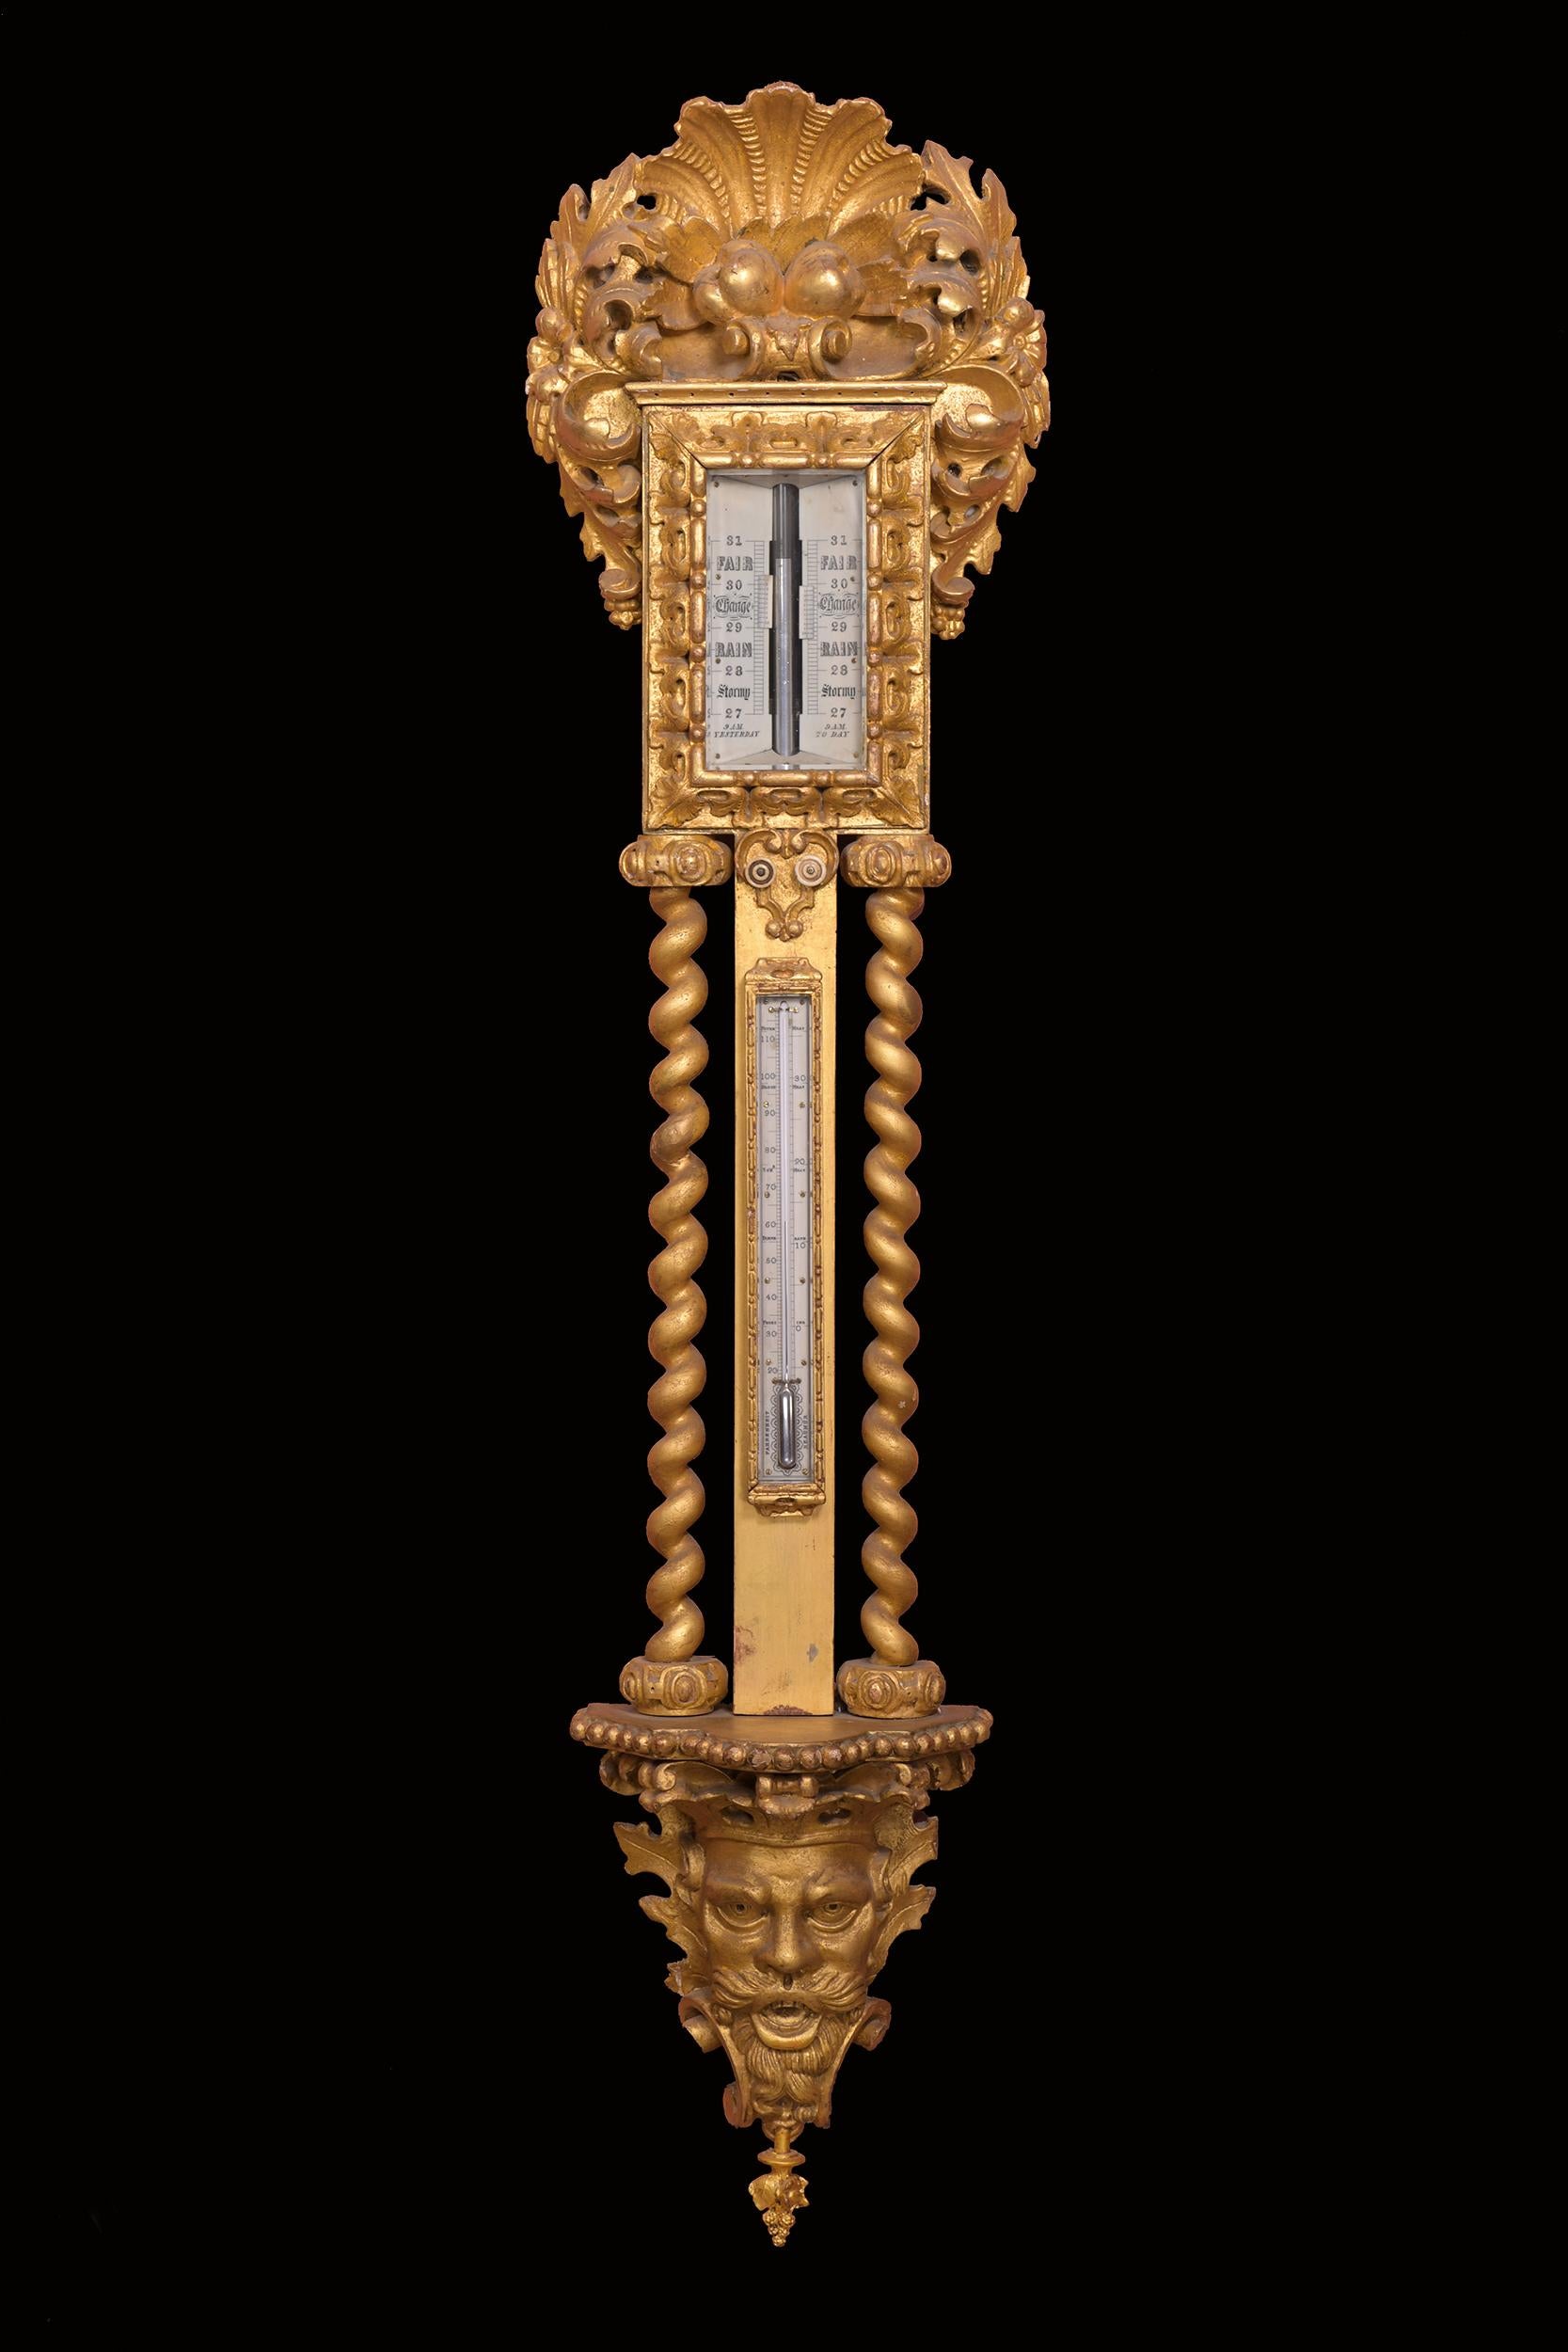 Ein faszinierendes irisches Barometer aus Goldholz im Barockstil. Das große Stabbarometer hat einen großen geschnitzten Rahmen aus Goldholz mit einem Muschelmotiv. Das Zifferblatt hat die originale doppelte Vernier-Skala mit Wettervorhersagen von 27